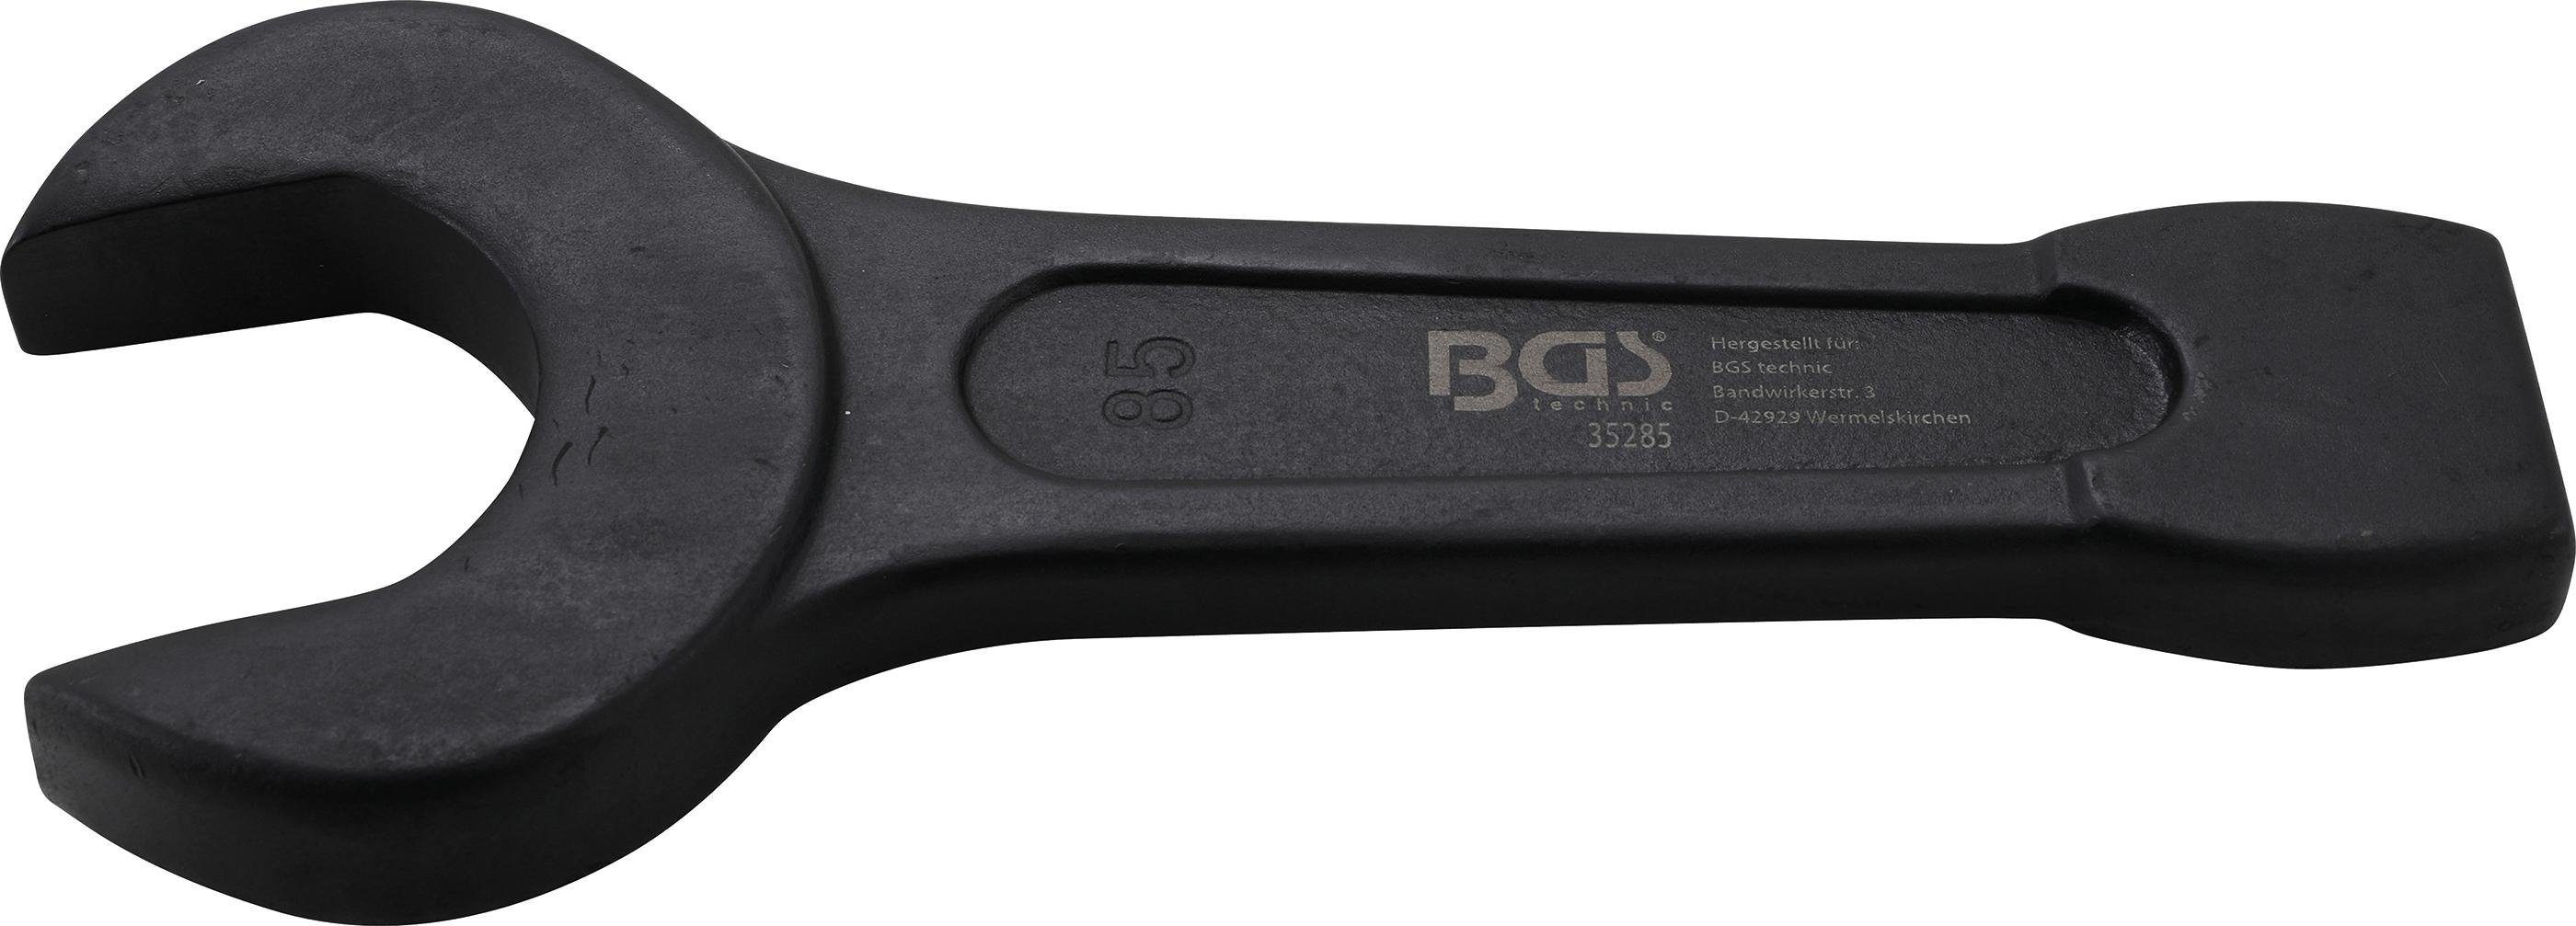 BGS technic Maulschlüssel Schlag-Maulschlüssel, SW 85 mm